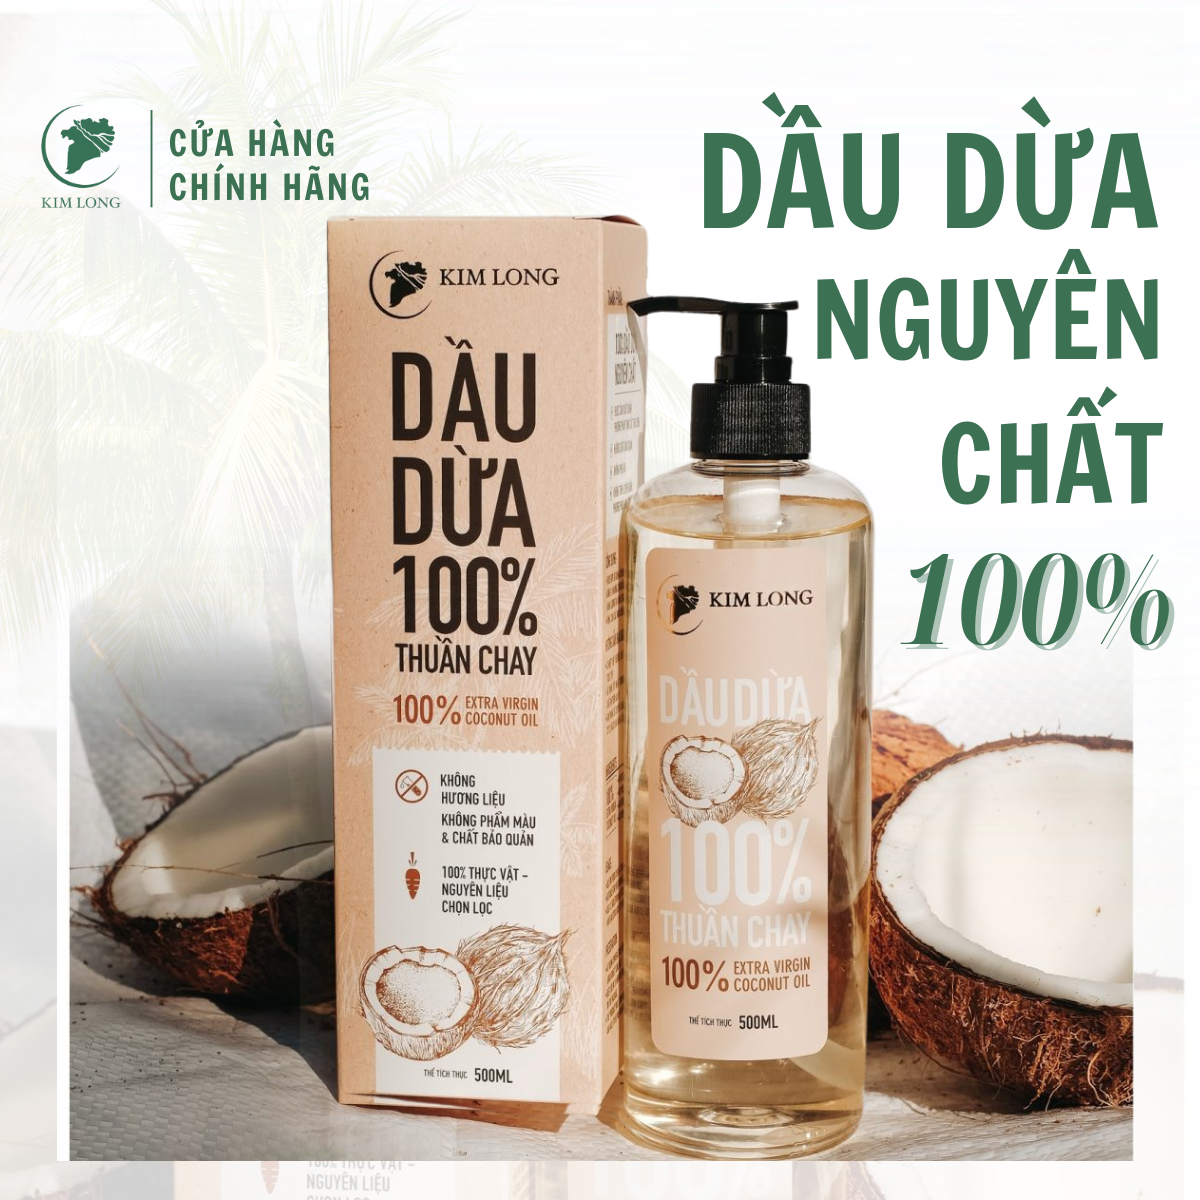 Dầu Dừa nguyên chất 100% - Coconut oil Organic extra virgin - Dầu dừa dưỡng tóc, dưỡng da, dưỡng môi, massage, ngừa rạn da - Dầu dừa Kim Long an toàn cho mẹ bầu và trẻ sơ sinh